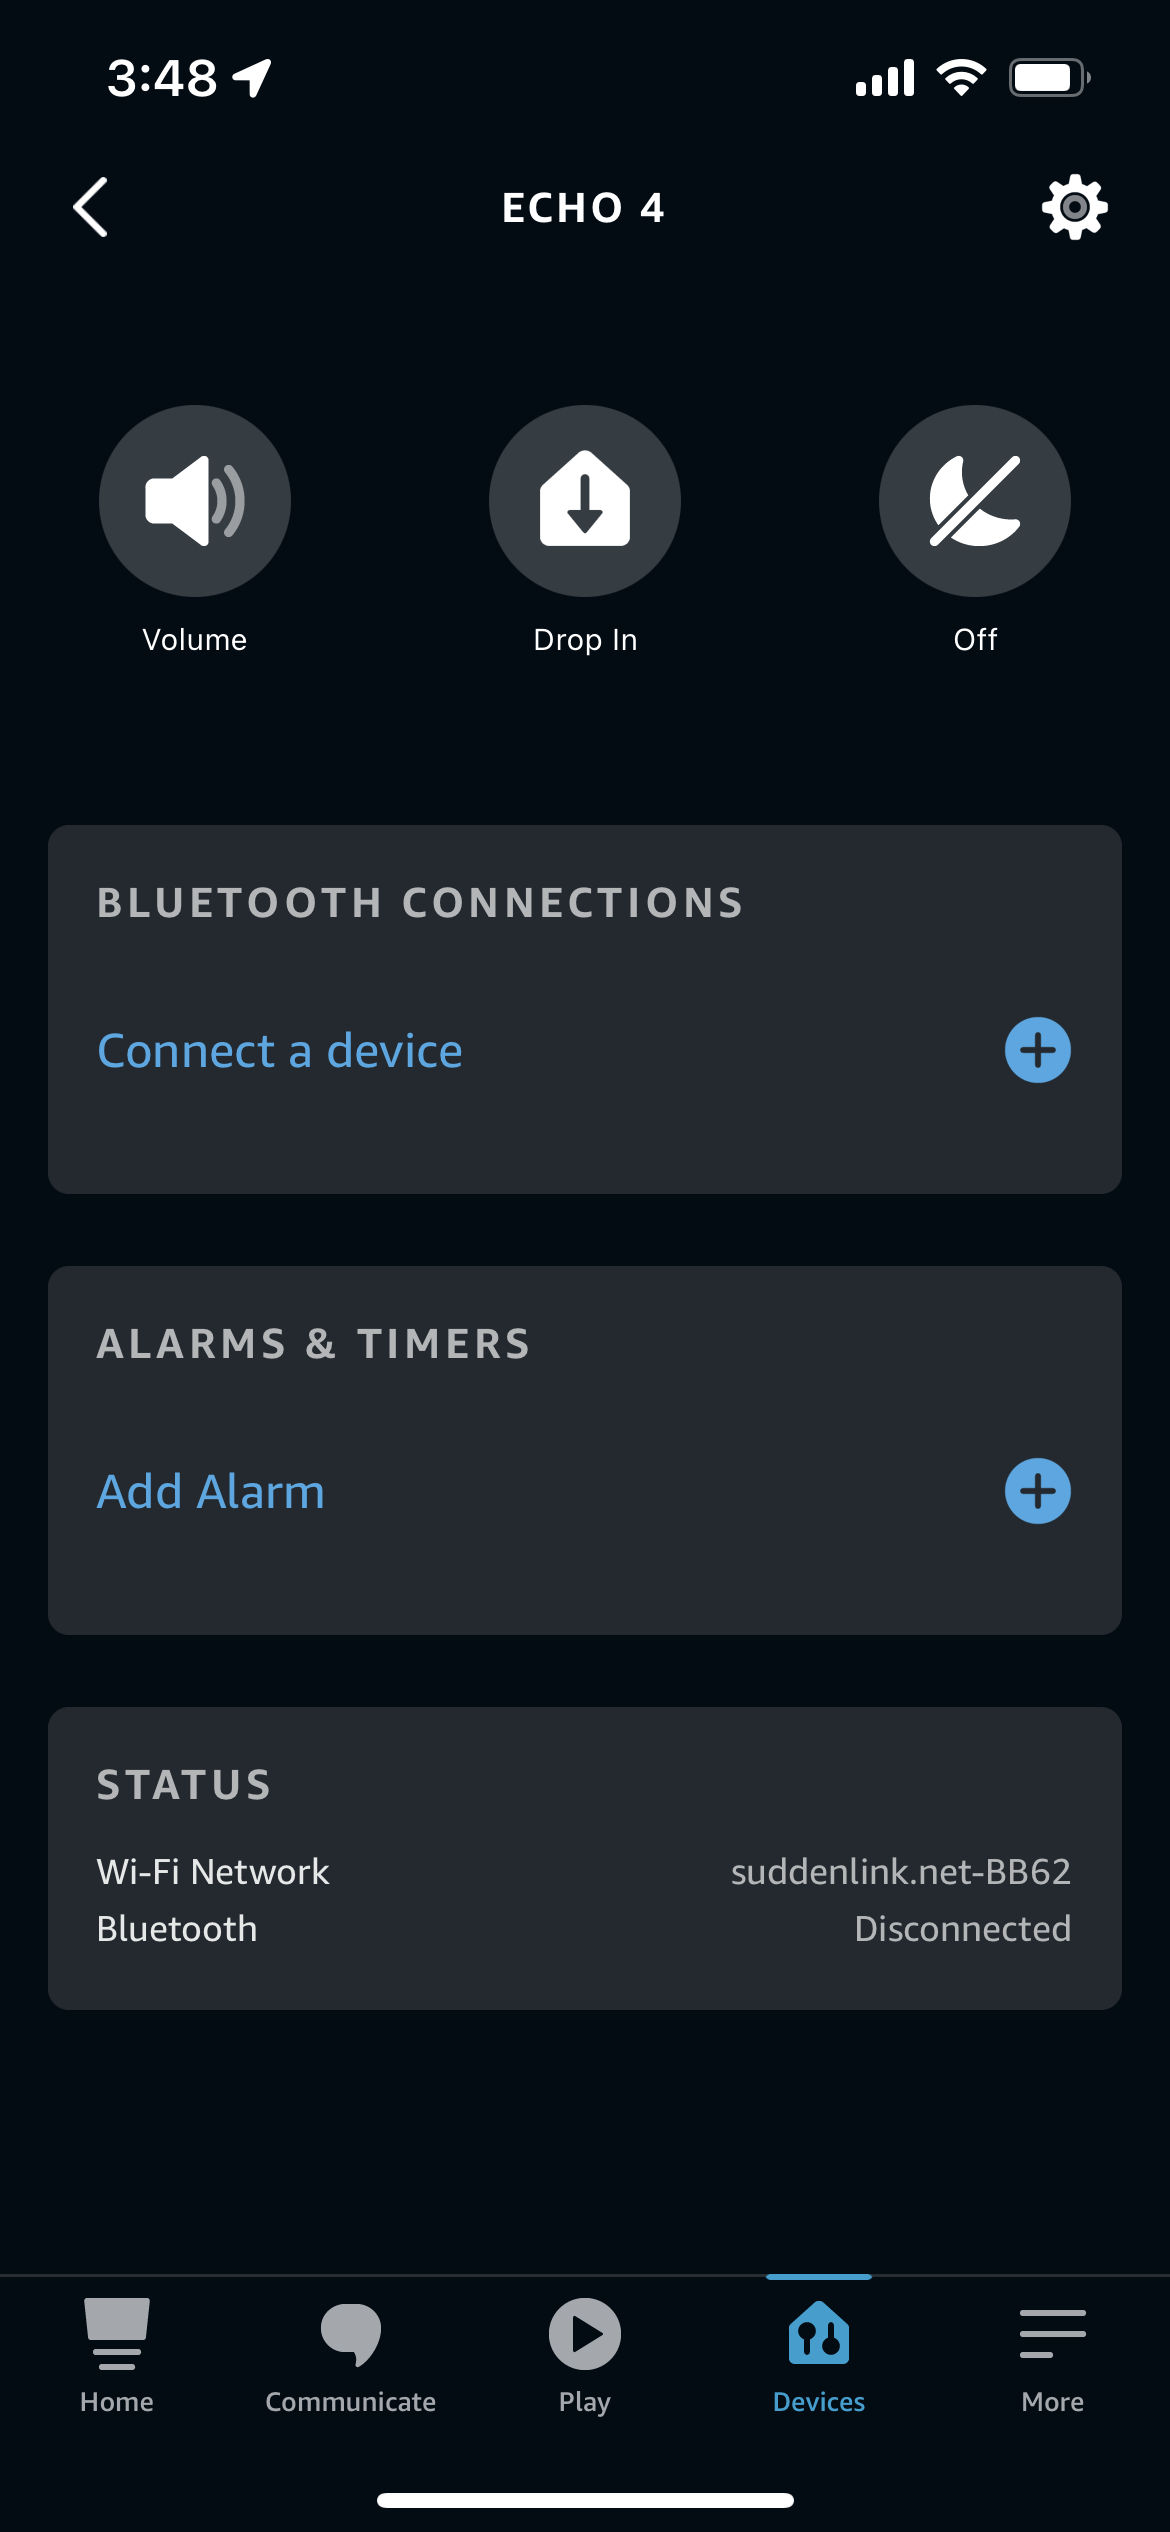 Echo 4 device settings in the Alexa app